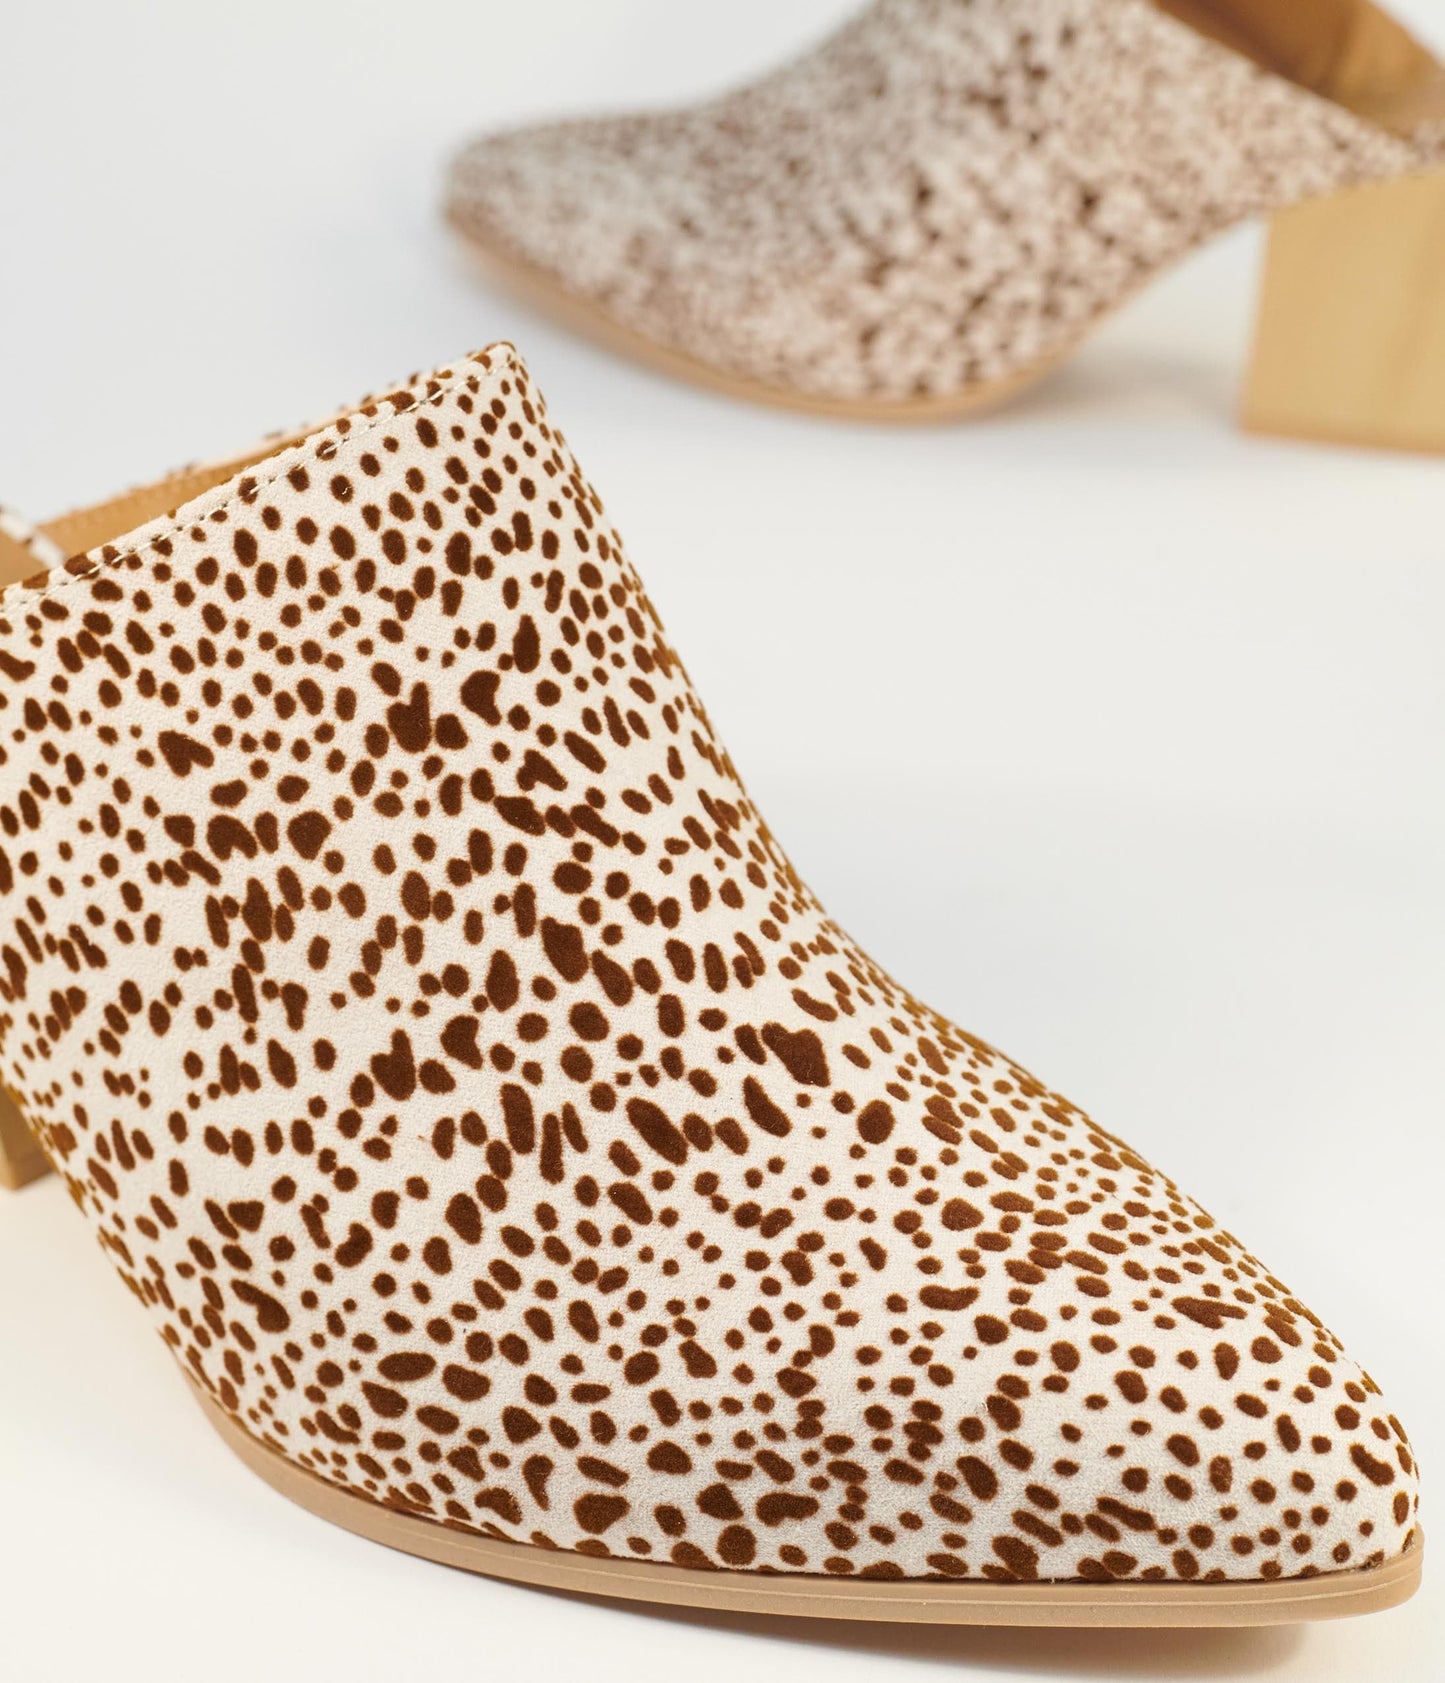 Cream & Brown Cheetah Suede Mule Heels